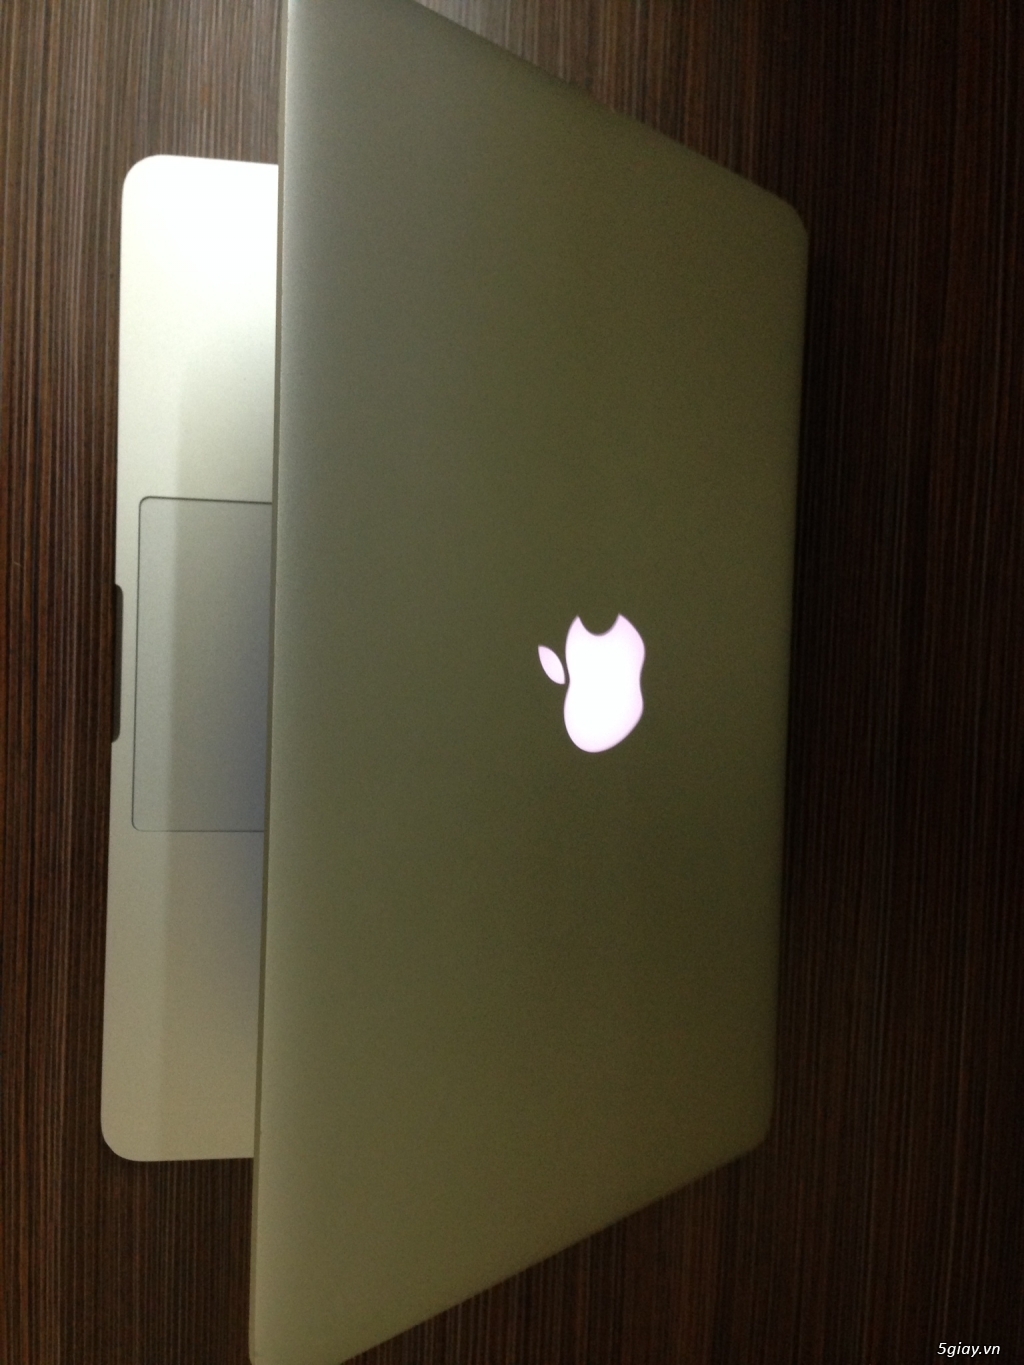 HCM - Bán Macbook Pro 13.3 Retina ME866LL/A Model 2013 - 1